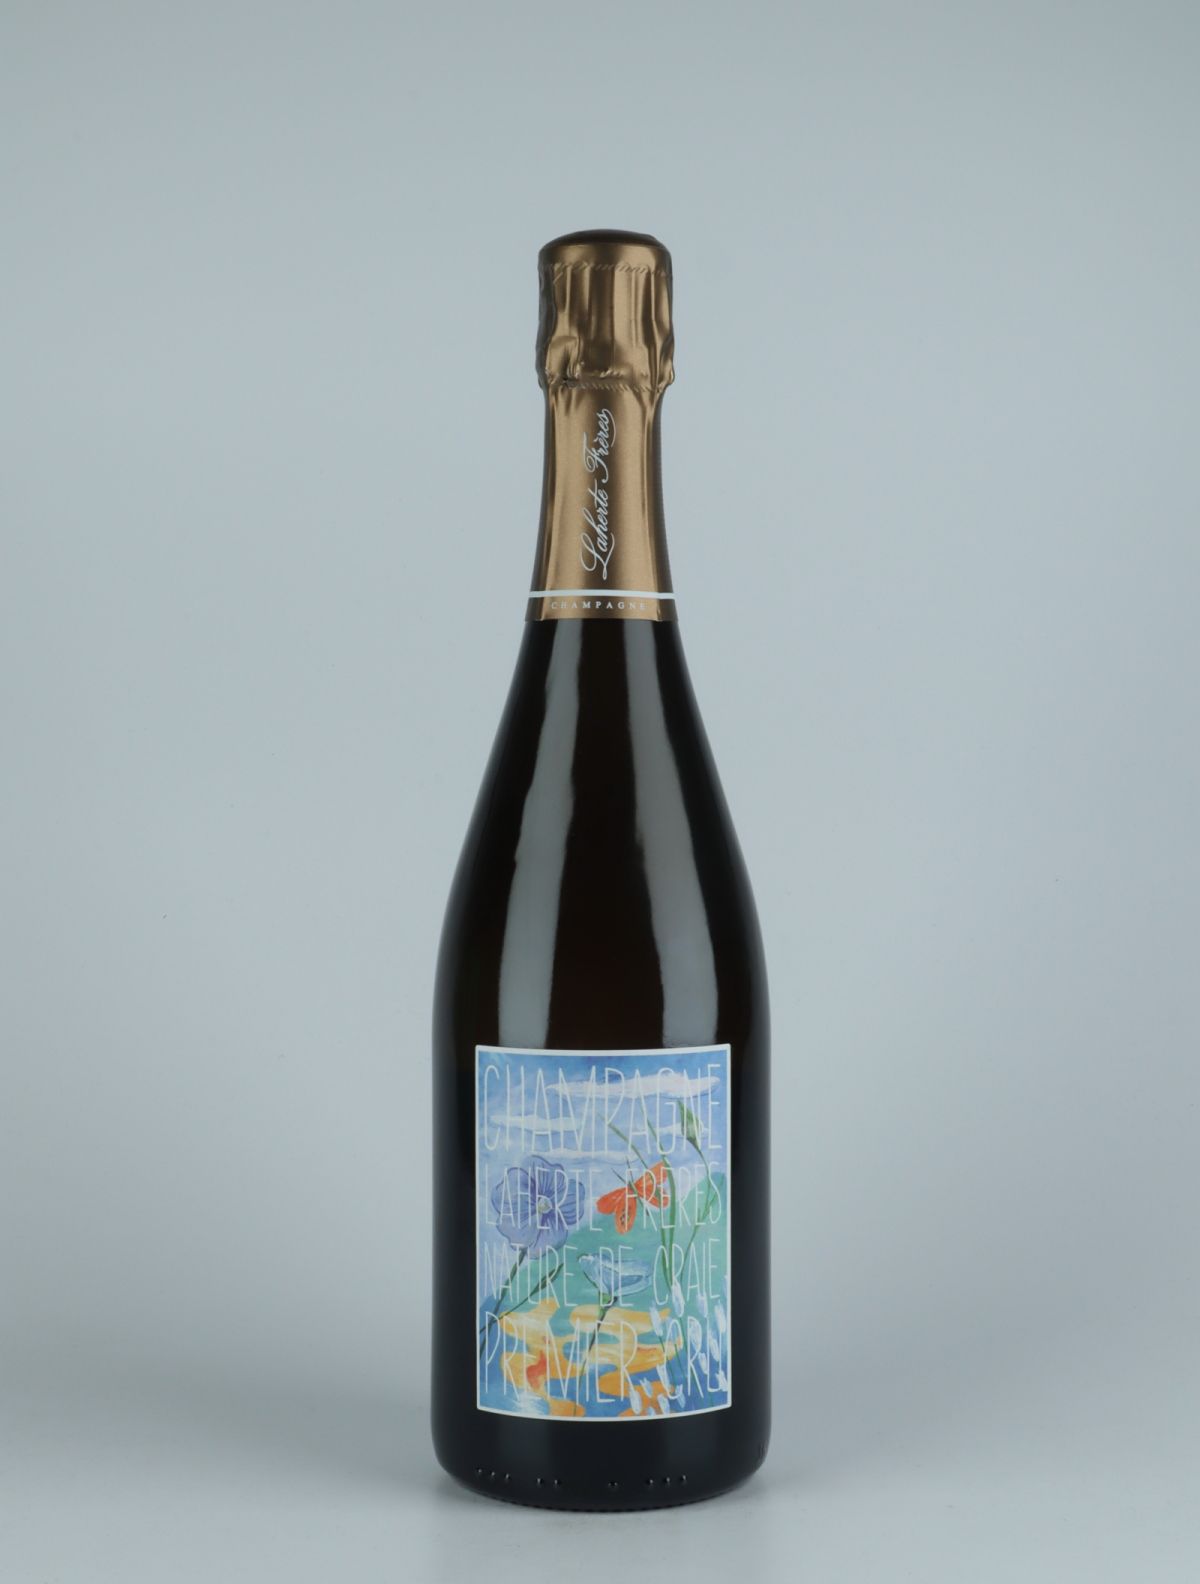 A bottle N.V. Blanc de Blancs 1. Cru - Nature de Craie - Brut Nature Sparkling from Laherte Frères, Champagne in France